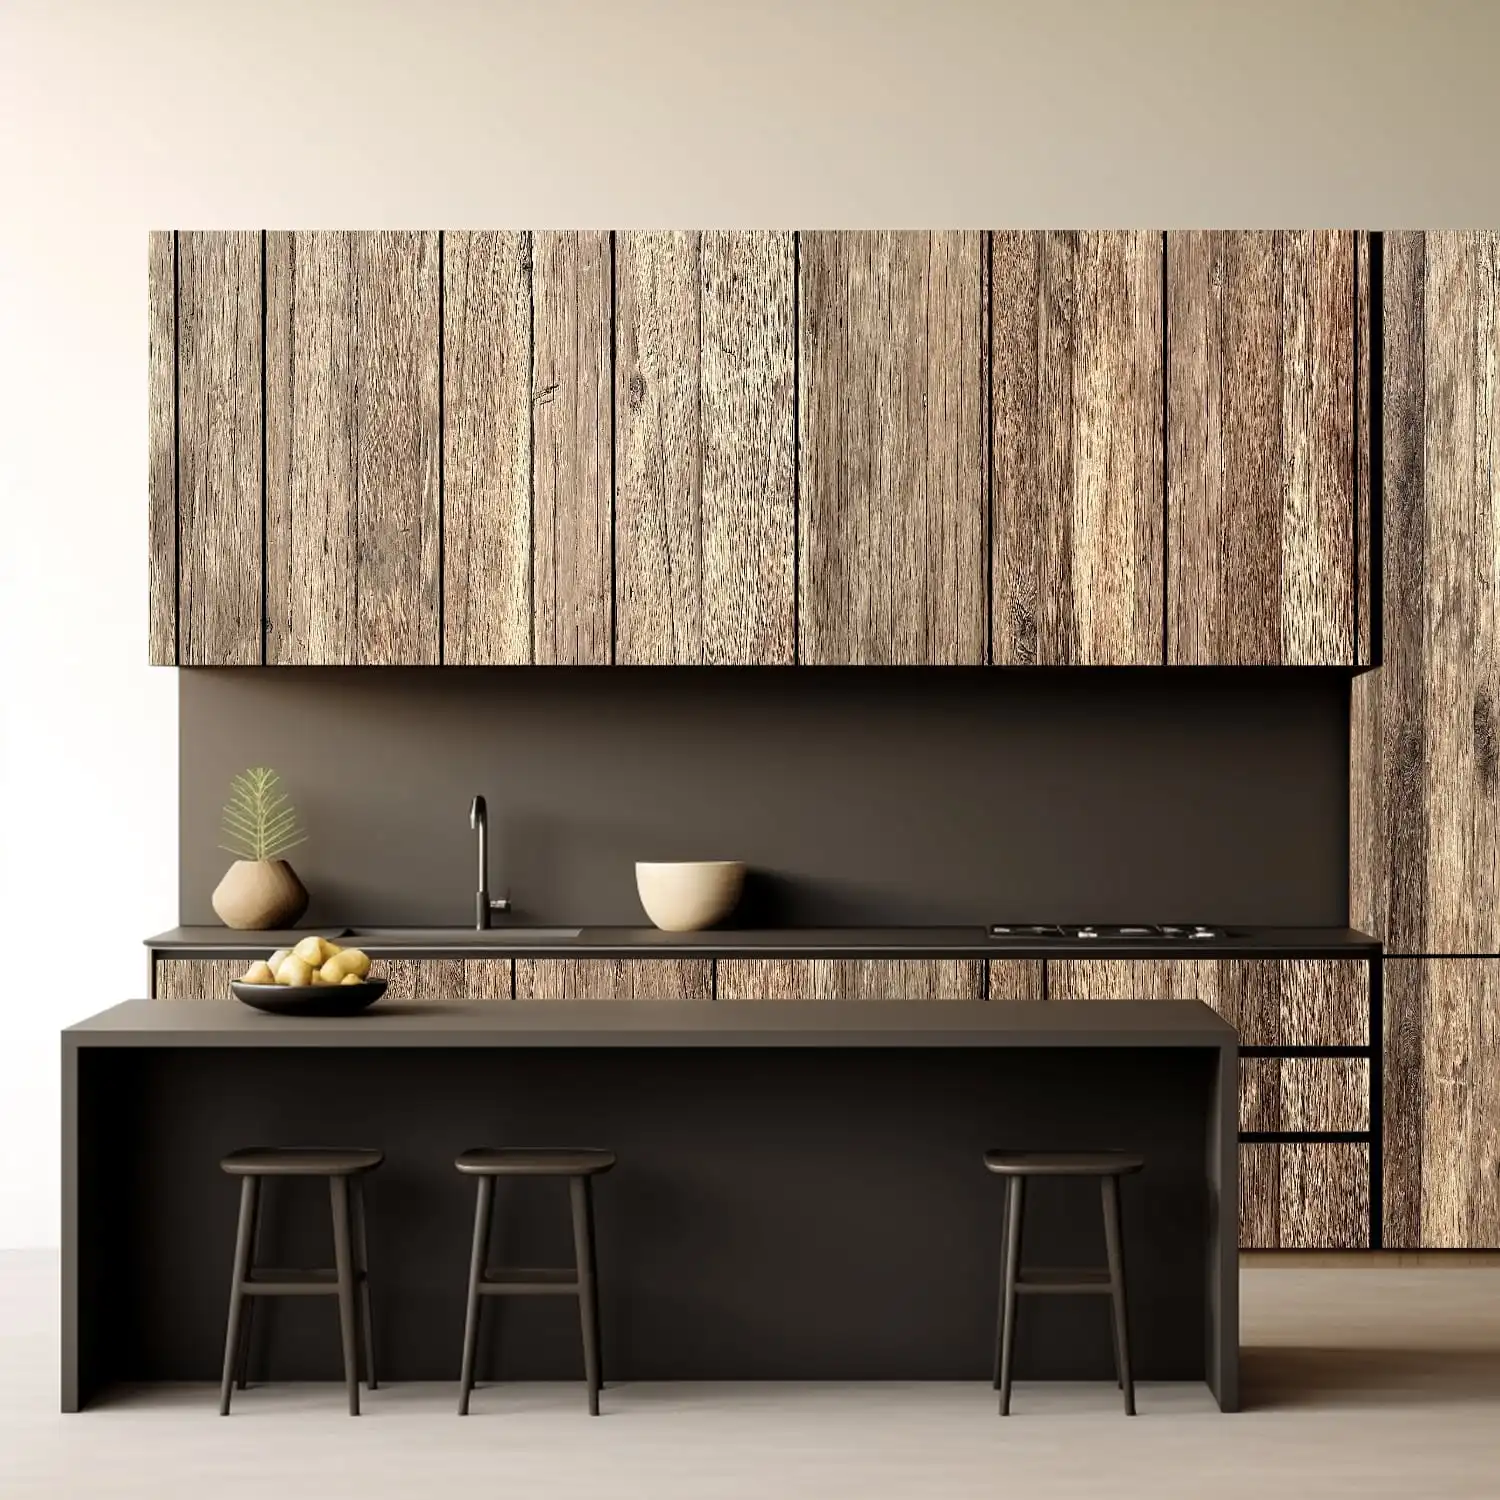  Intérieur de cuisine moderne avec armoires en bois, comptoir noir et trois tabourets, comportant des éléments de design minimalistes et des panneaux vieux bois. 